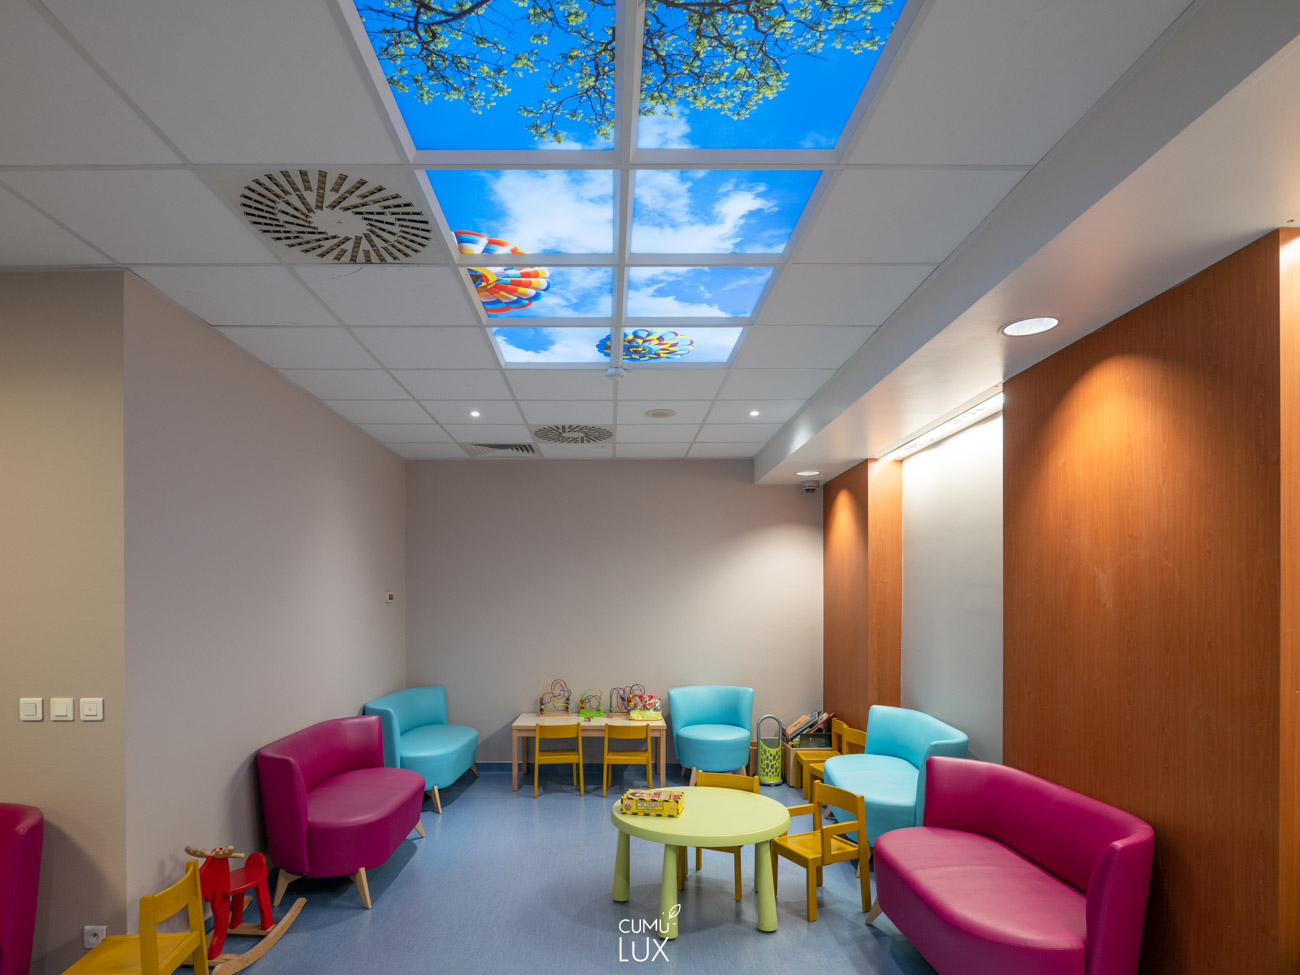 Faux plafond LED : Économie d'énergie et confort avec les dalles